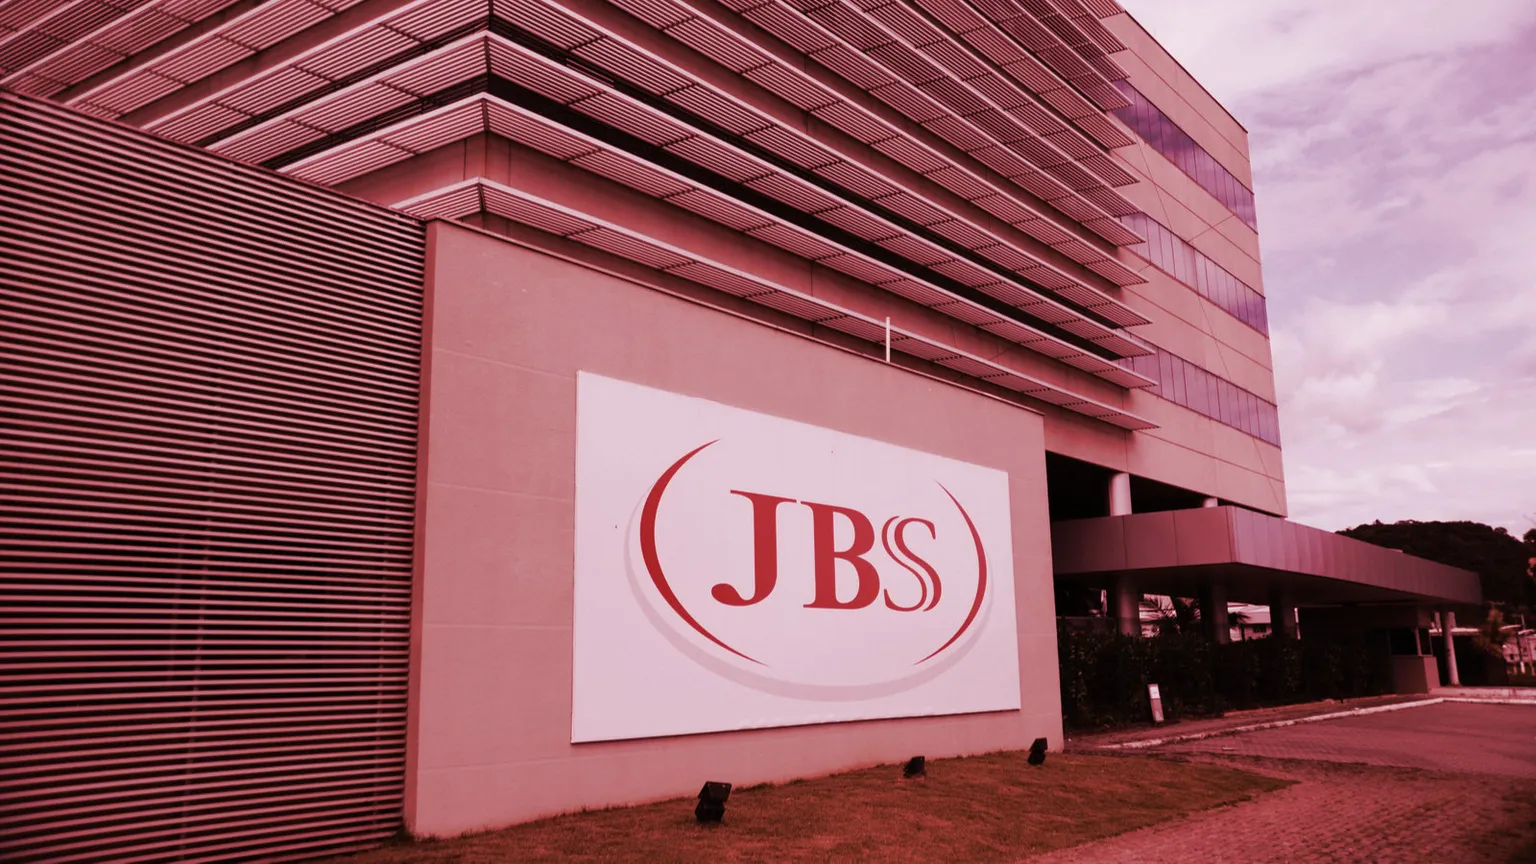 JBS es una empresa de procesamiento de alimentos que abastece a Estados Unidos con aproximadamente el 20% de su suministro de carne. Imagen: Shutterstock